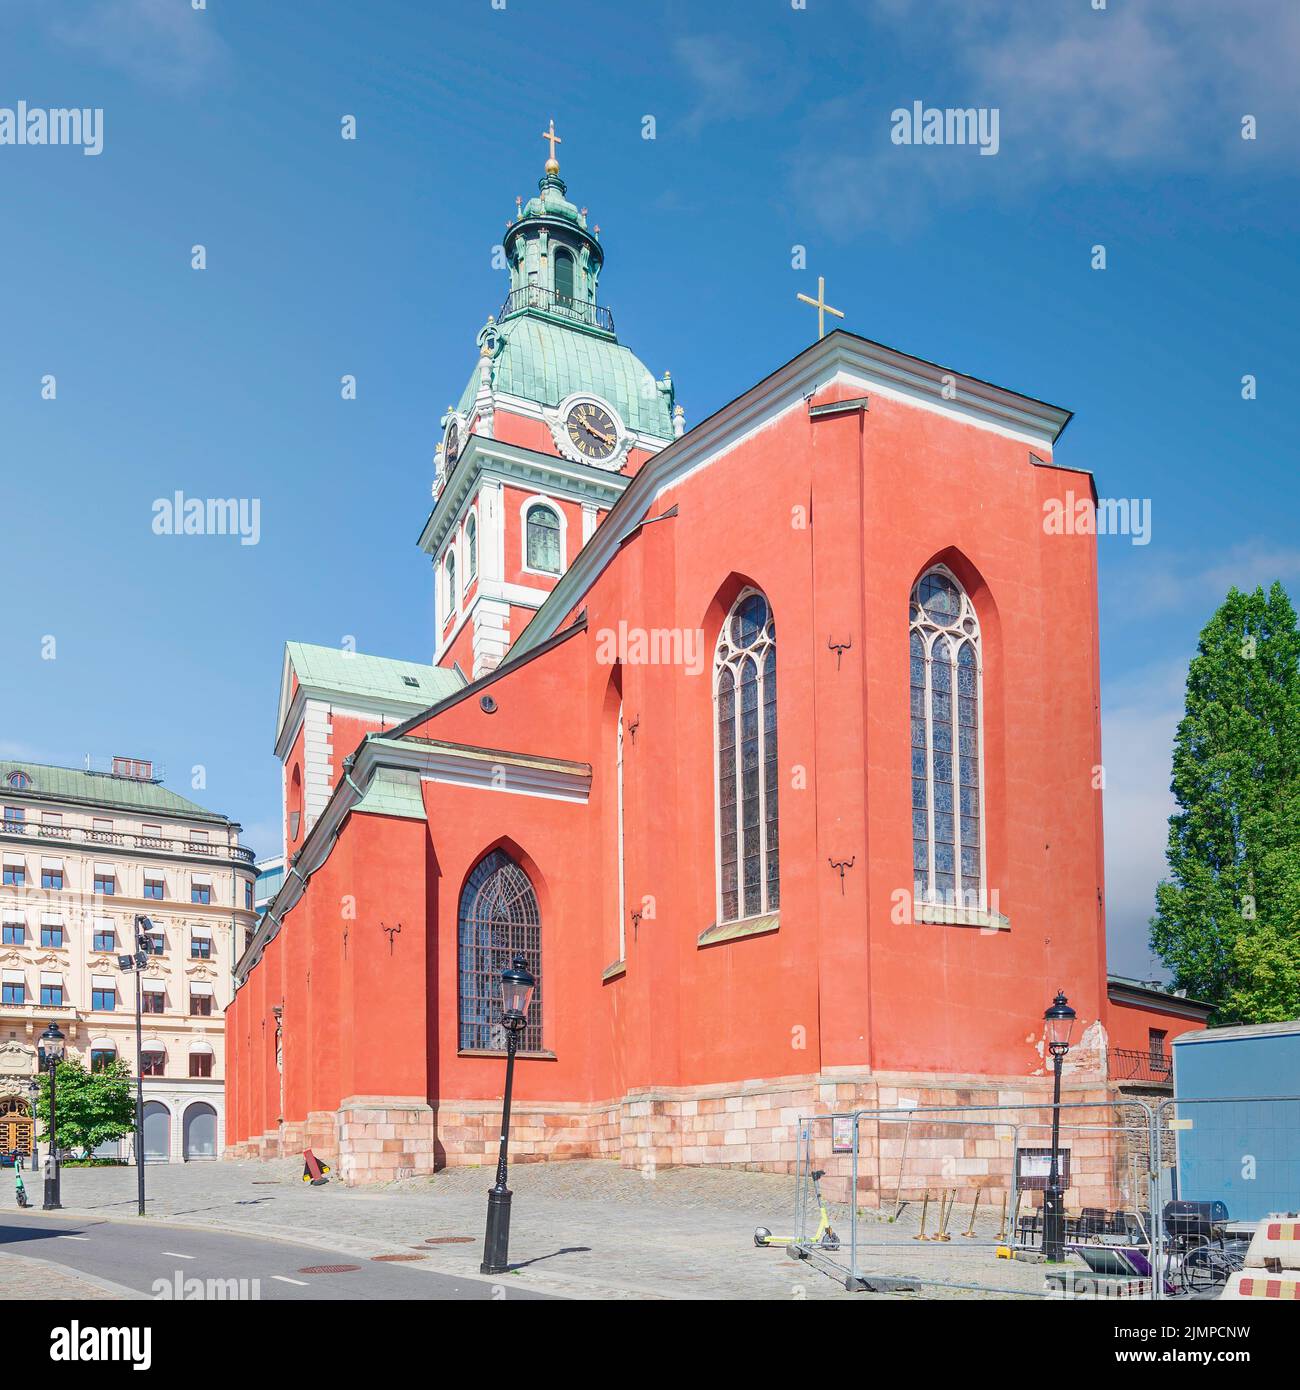 Sankt Jacobs kyrka, una iglesia en Norrmalm, centro de Estocolmo, Suecia Foto de stock